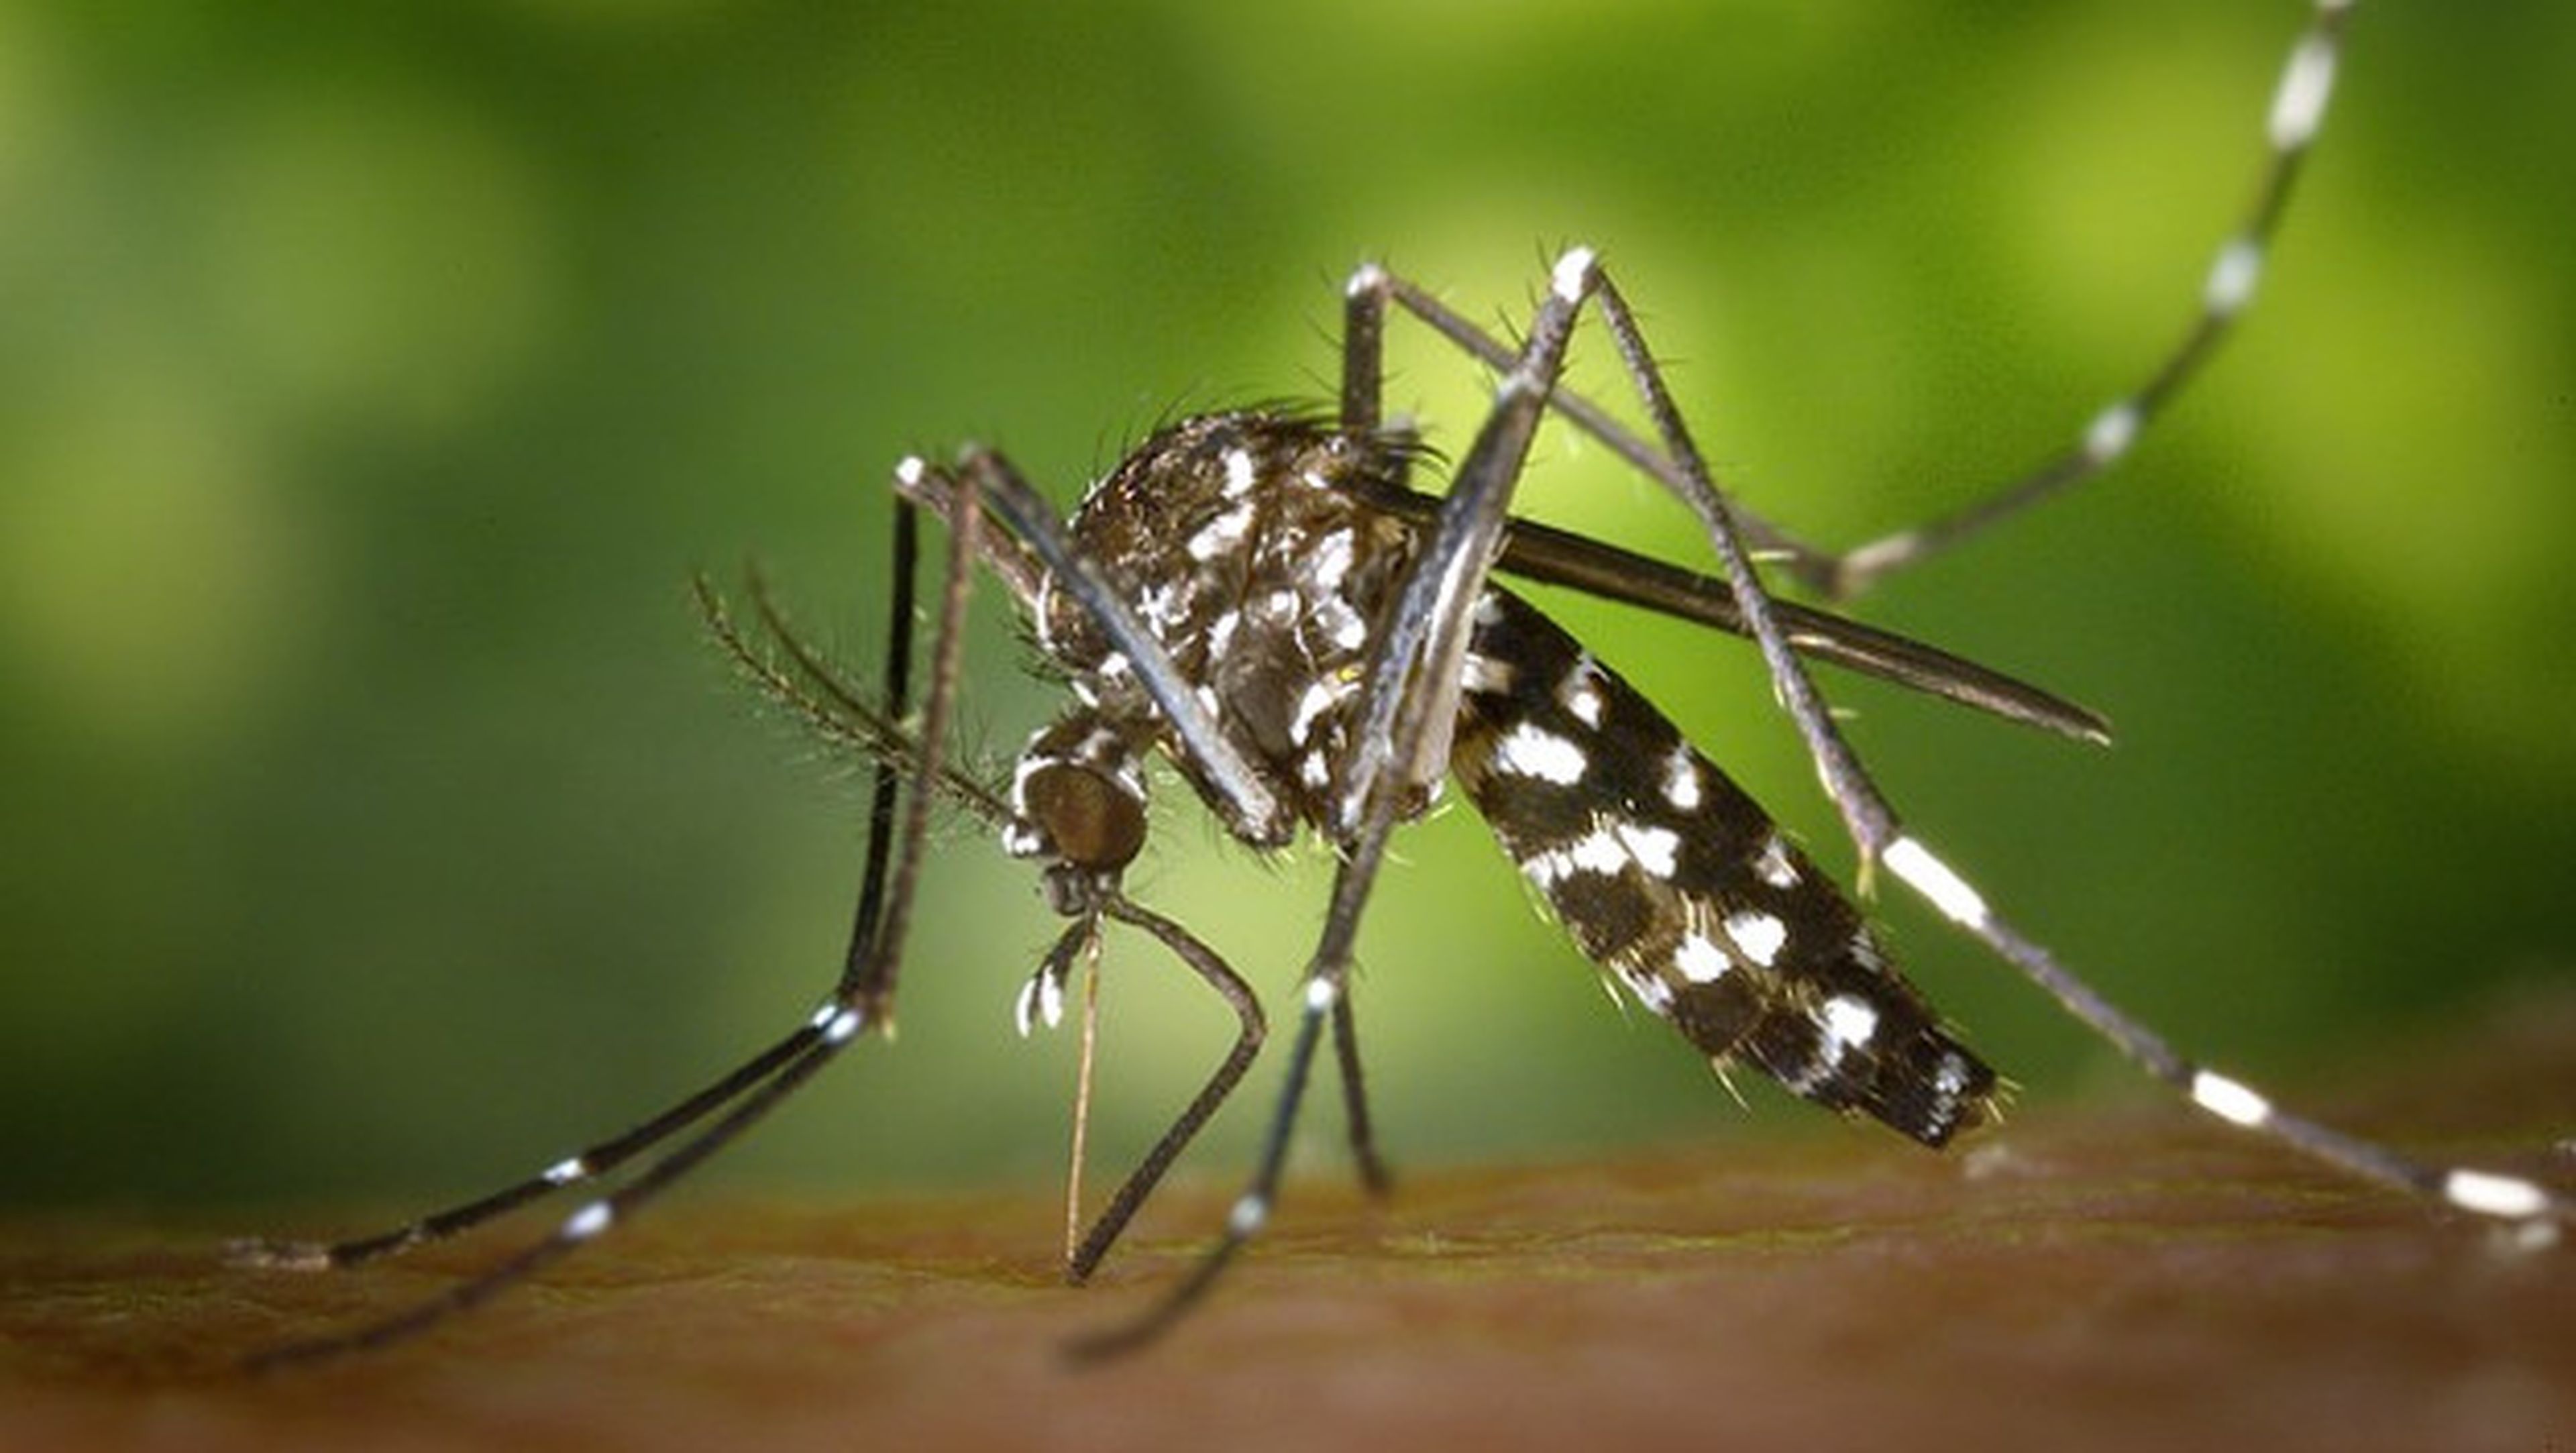 Descubren cómo evitar que te piquen los mosquitos, aunque aún falta para el repelente definitivo.